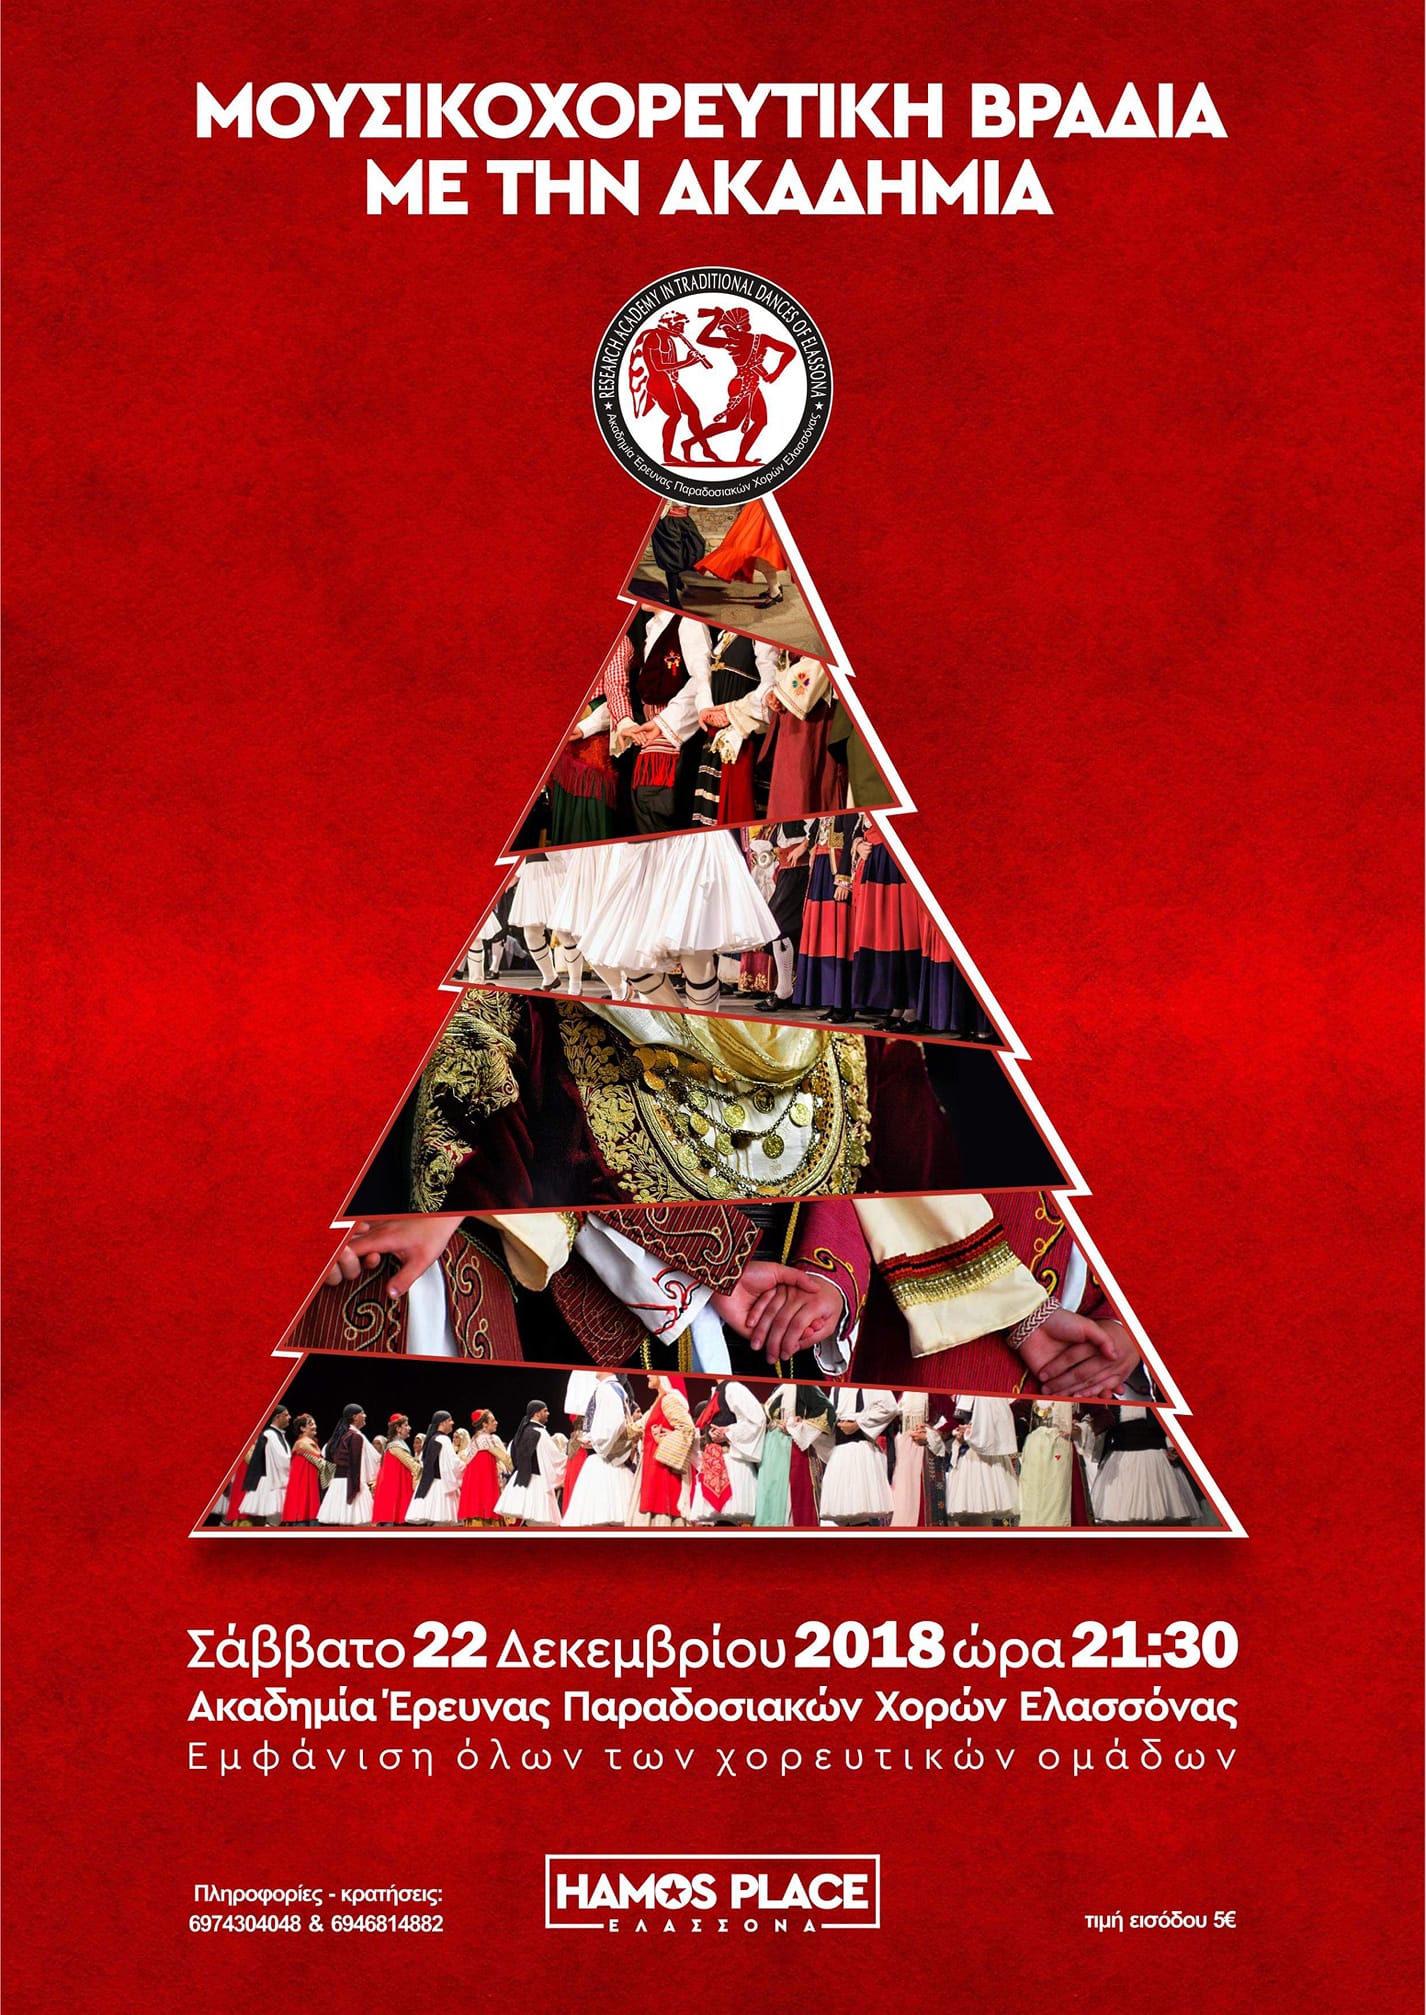 Μουσικοχορευτική βραδιά στην Ελασσόνα από την Ακαδημία Έρευνας Παραδοσιακών Χορών